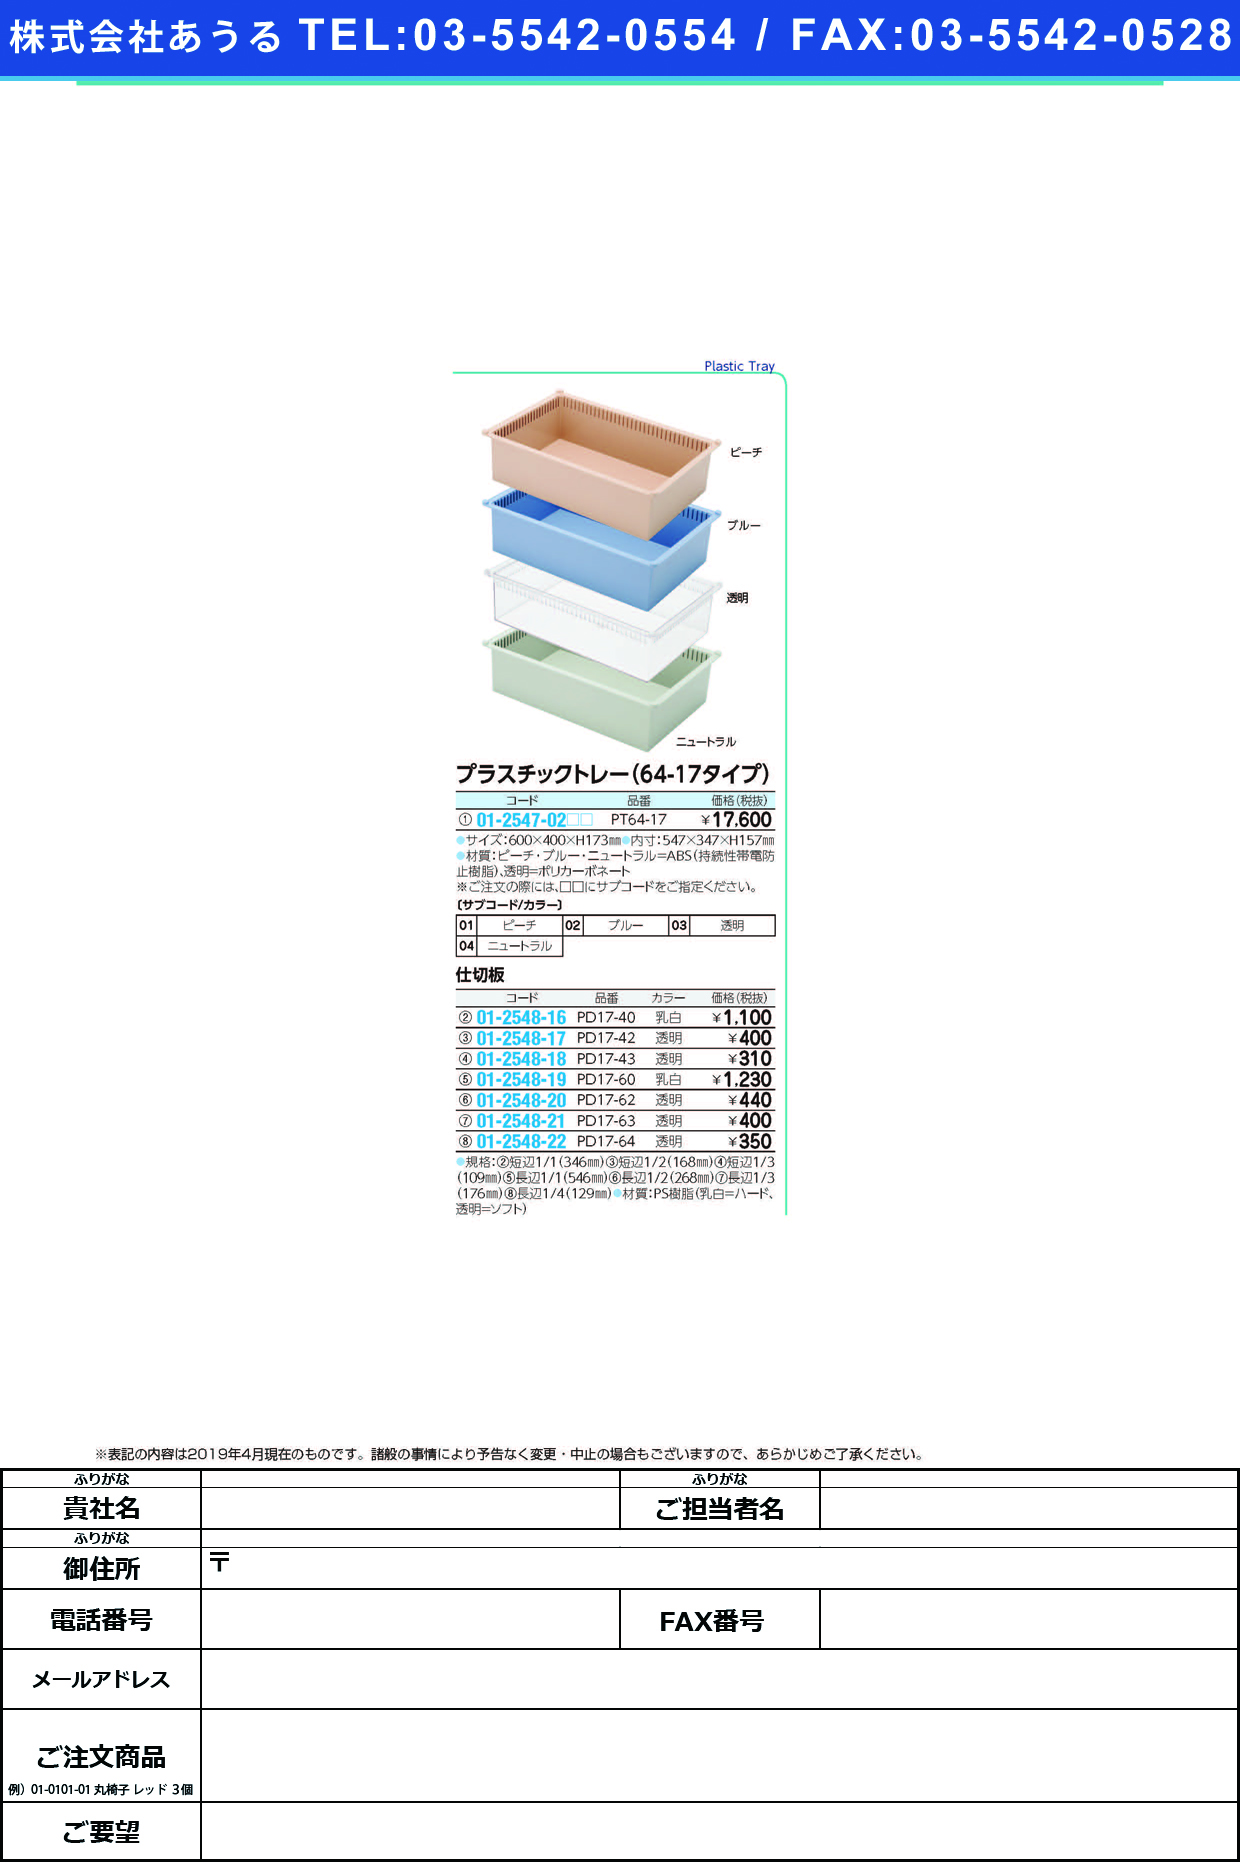 (01-2548-21)プラスチックトレー用仕切板 PD17-63(ﾄｳﾒｲ) ﾌﾟﾗｽﾁｯｸﾄﾚｰﾖｳｼｷﾘﾊﾞﾝ(サカセ化学工業)【1枚単位】【2019年カタログ商品】